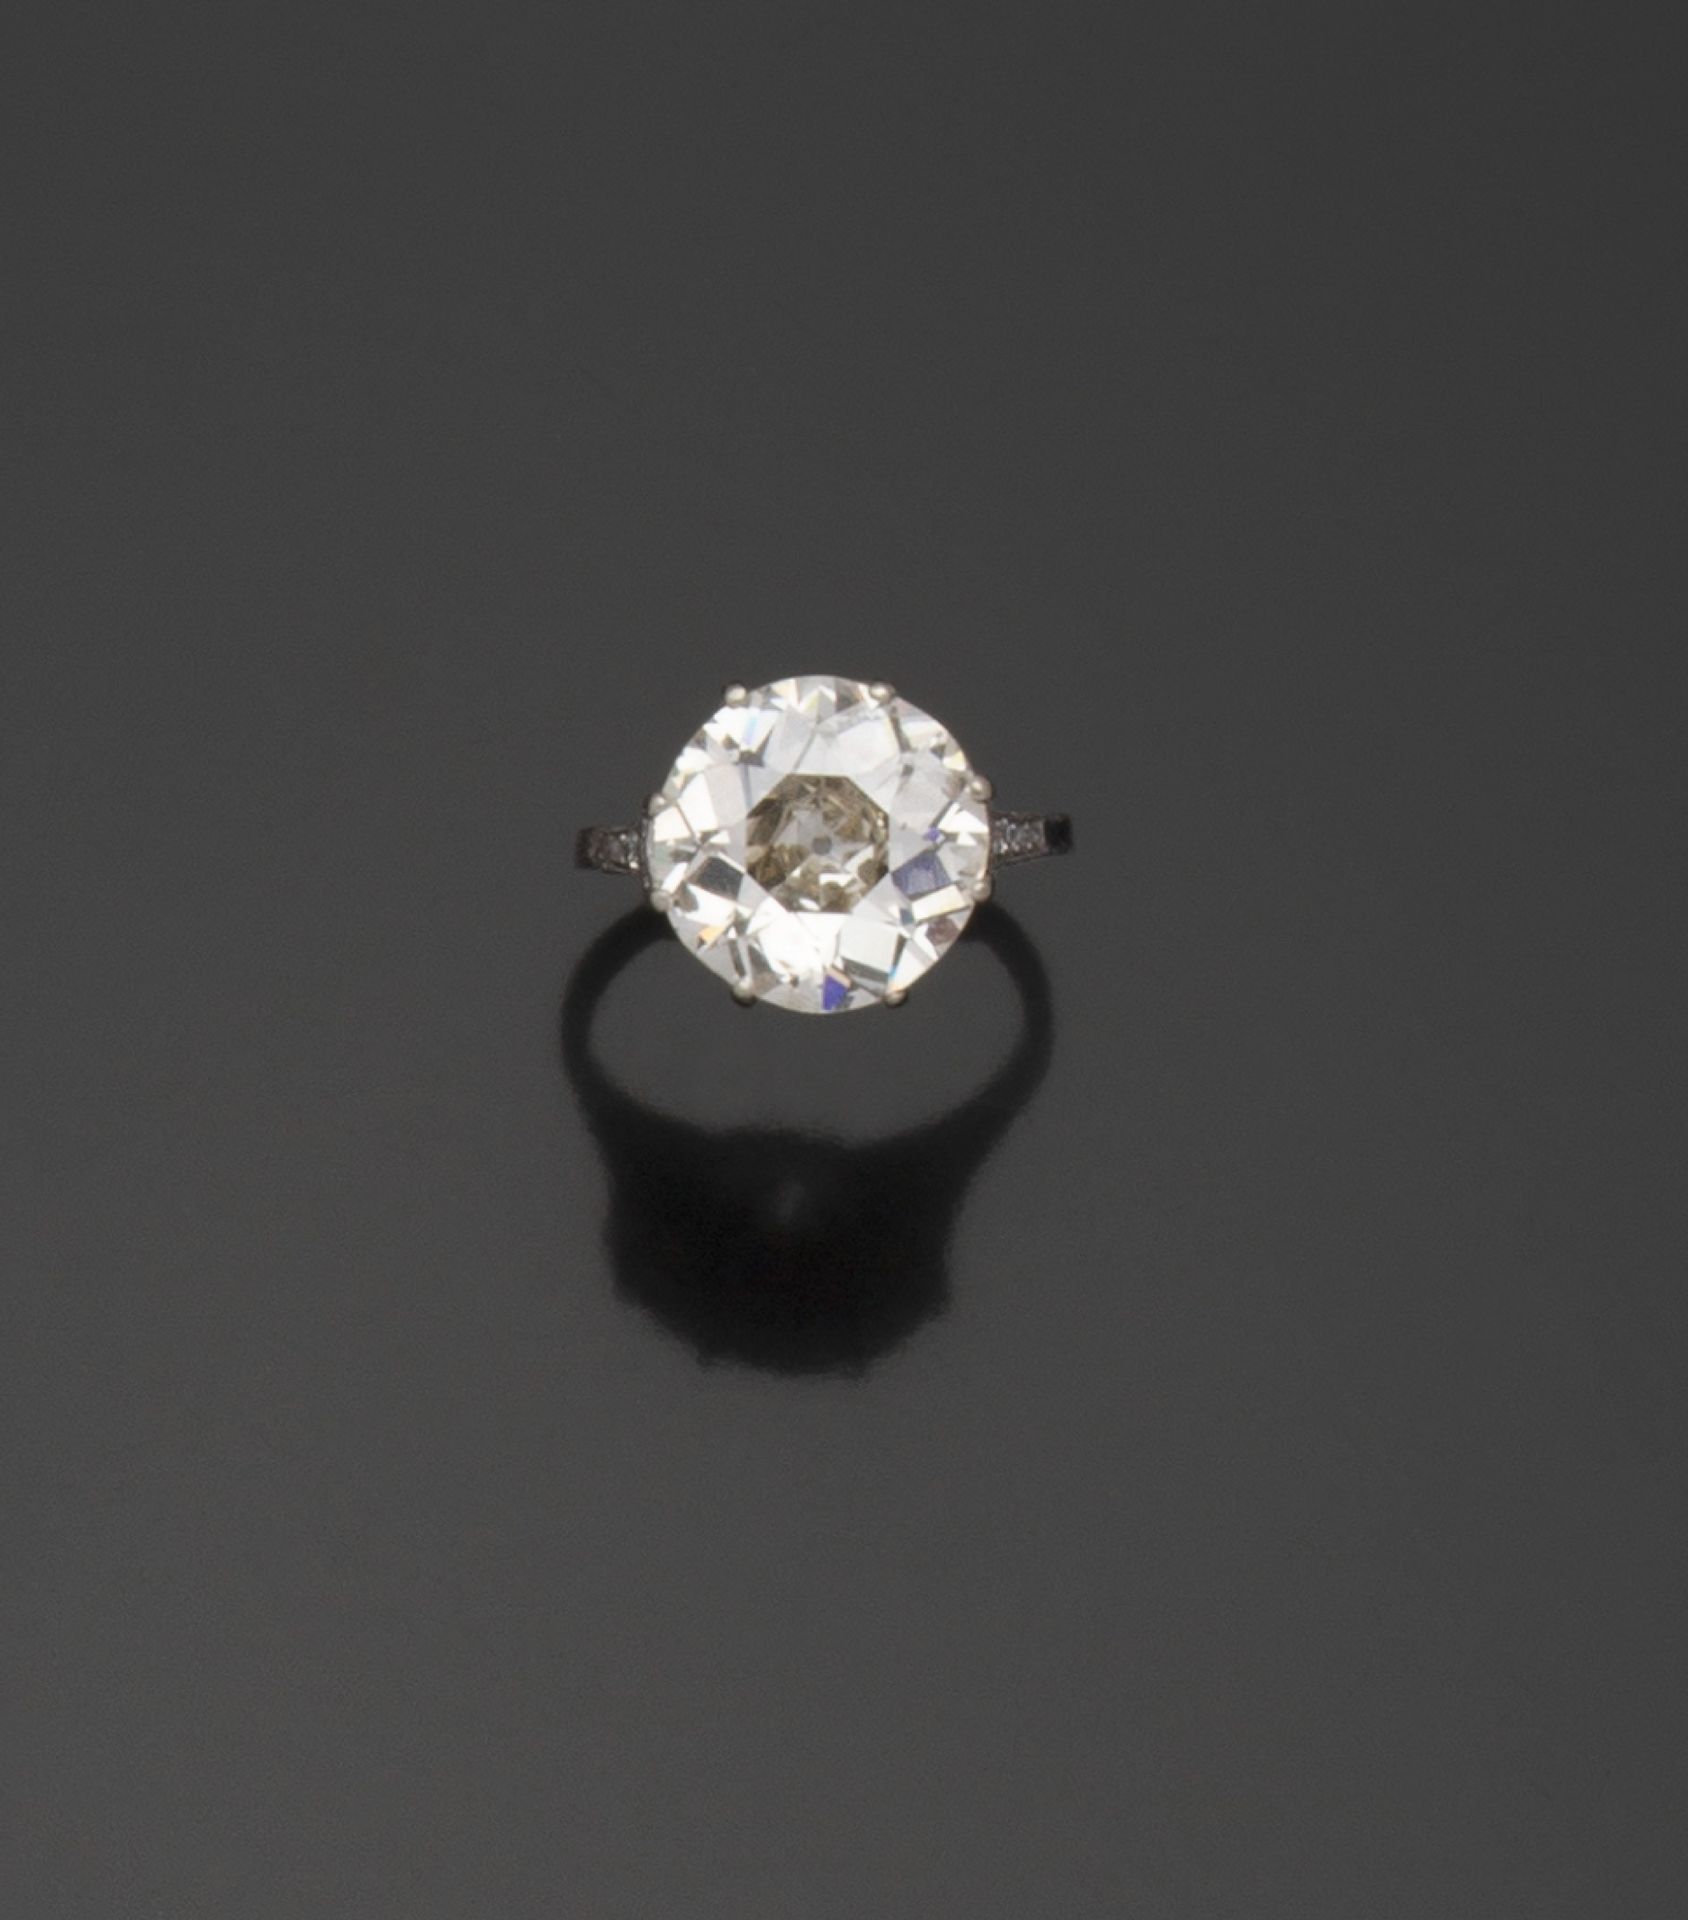 Null 铂金戒指（850/1000），以爪式镶嵌的老式欧洲切割钻石为中心，重达5.27克拉（已称重）。表圈上镶嵌着一排18颗玫瑰式切割的钻石，采用封闭式珍珠镶&hellip;